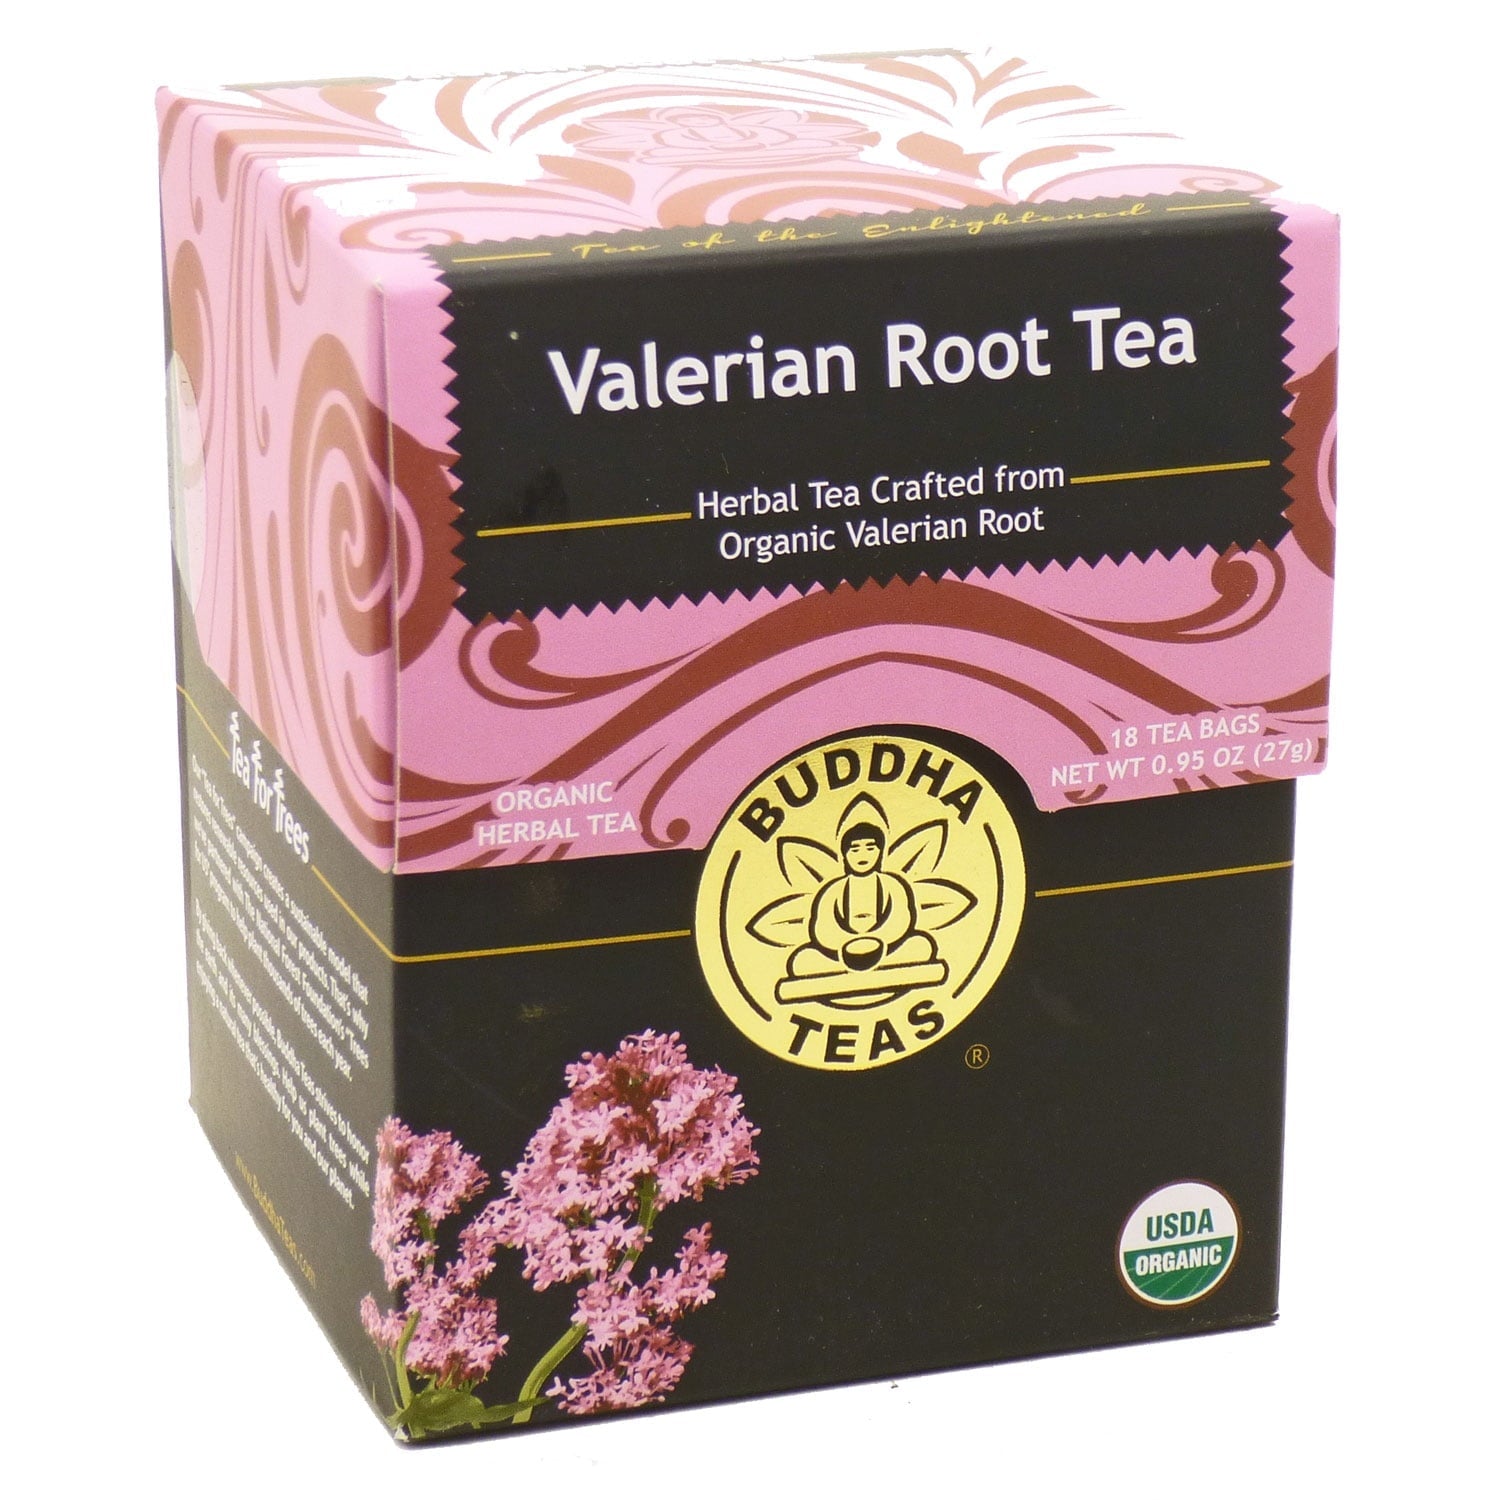 Buddha Teas Tea Leaves & Bags Valerian Root Tea 18 Bags Box